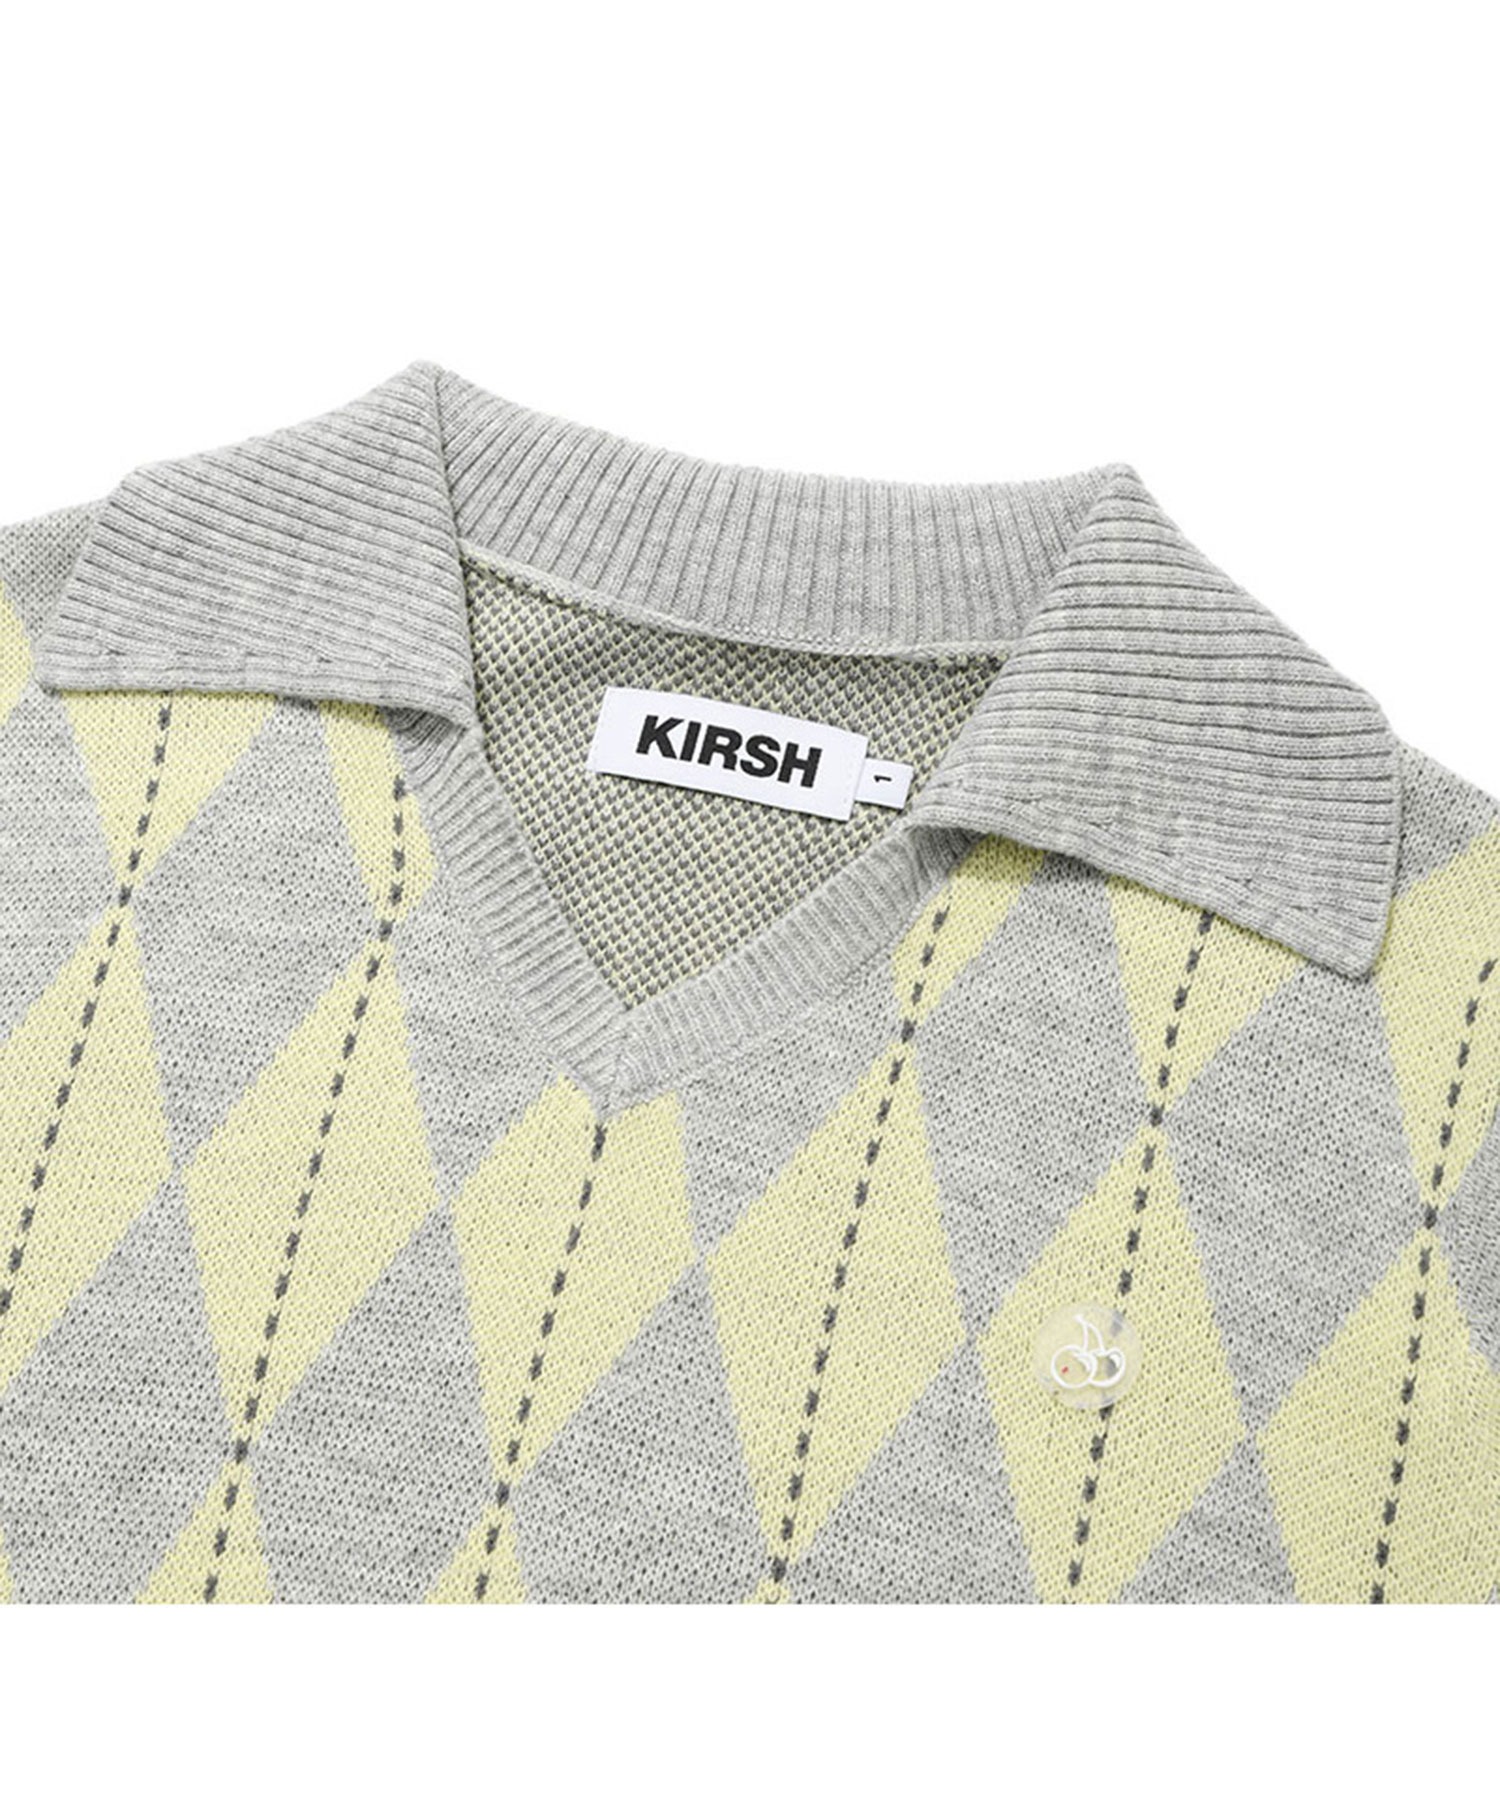 KIRSH ニットセーター